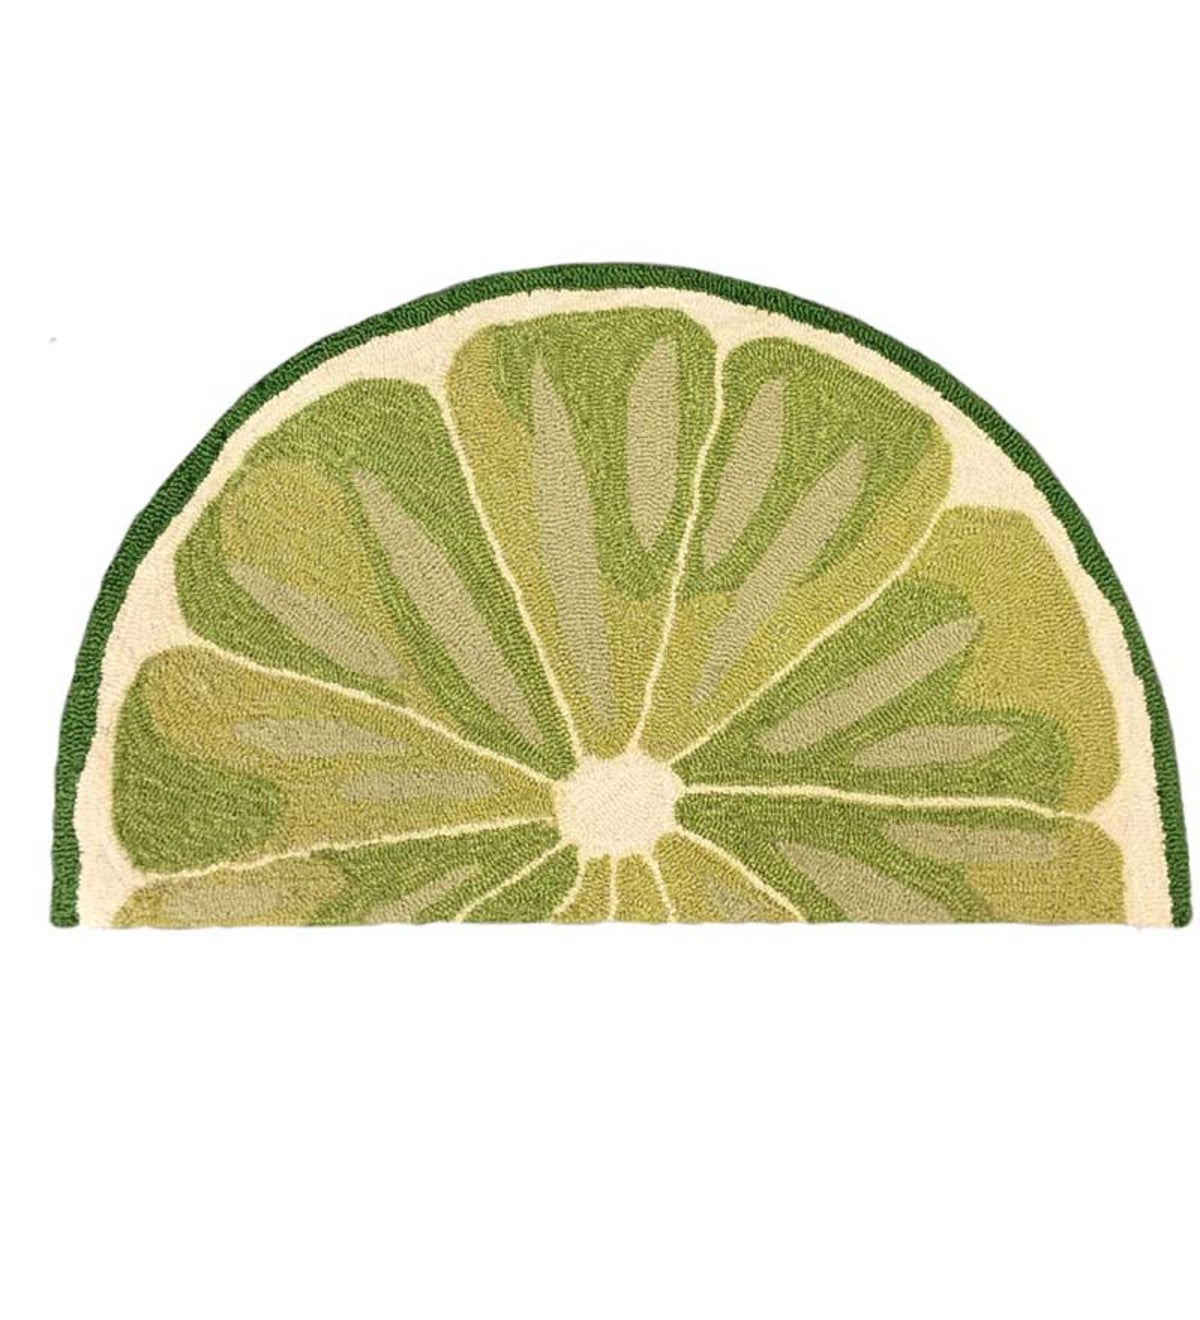 Fruit Slice Indoor/Outdoor Half-Round Rug, 20"W x 30"L - Lime Slice Green